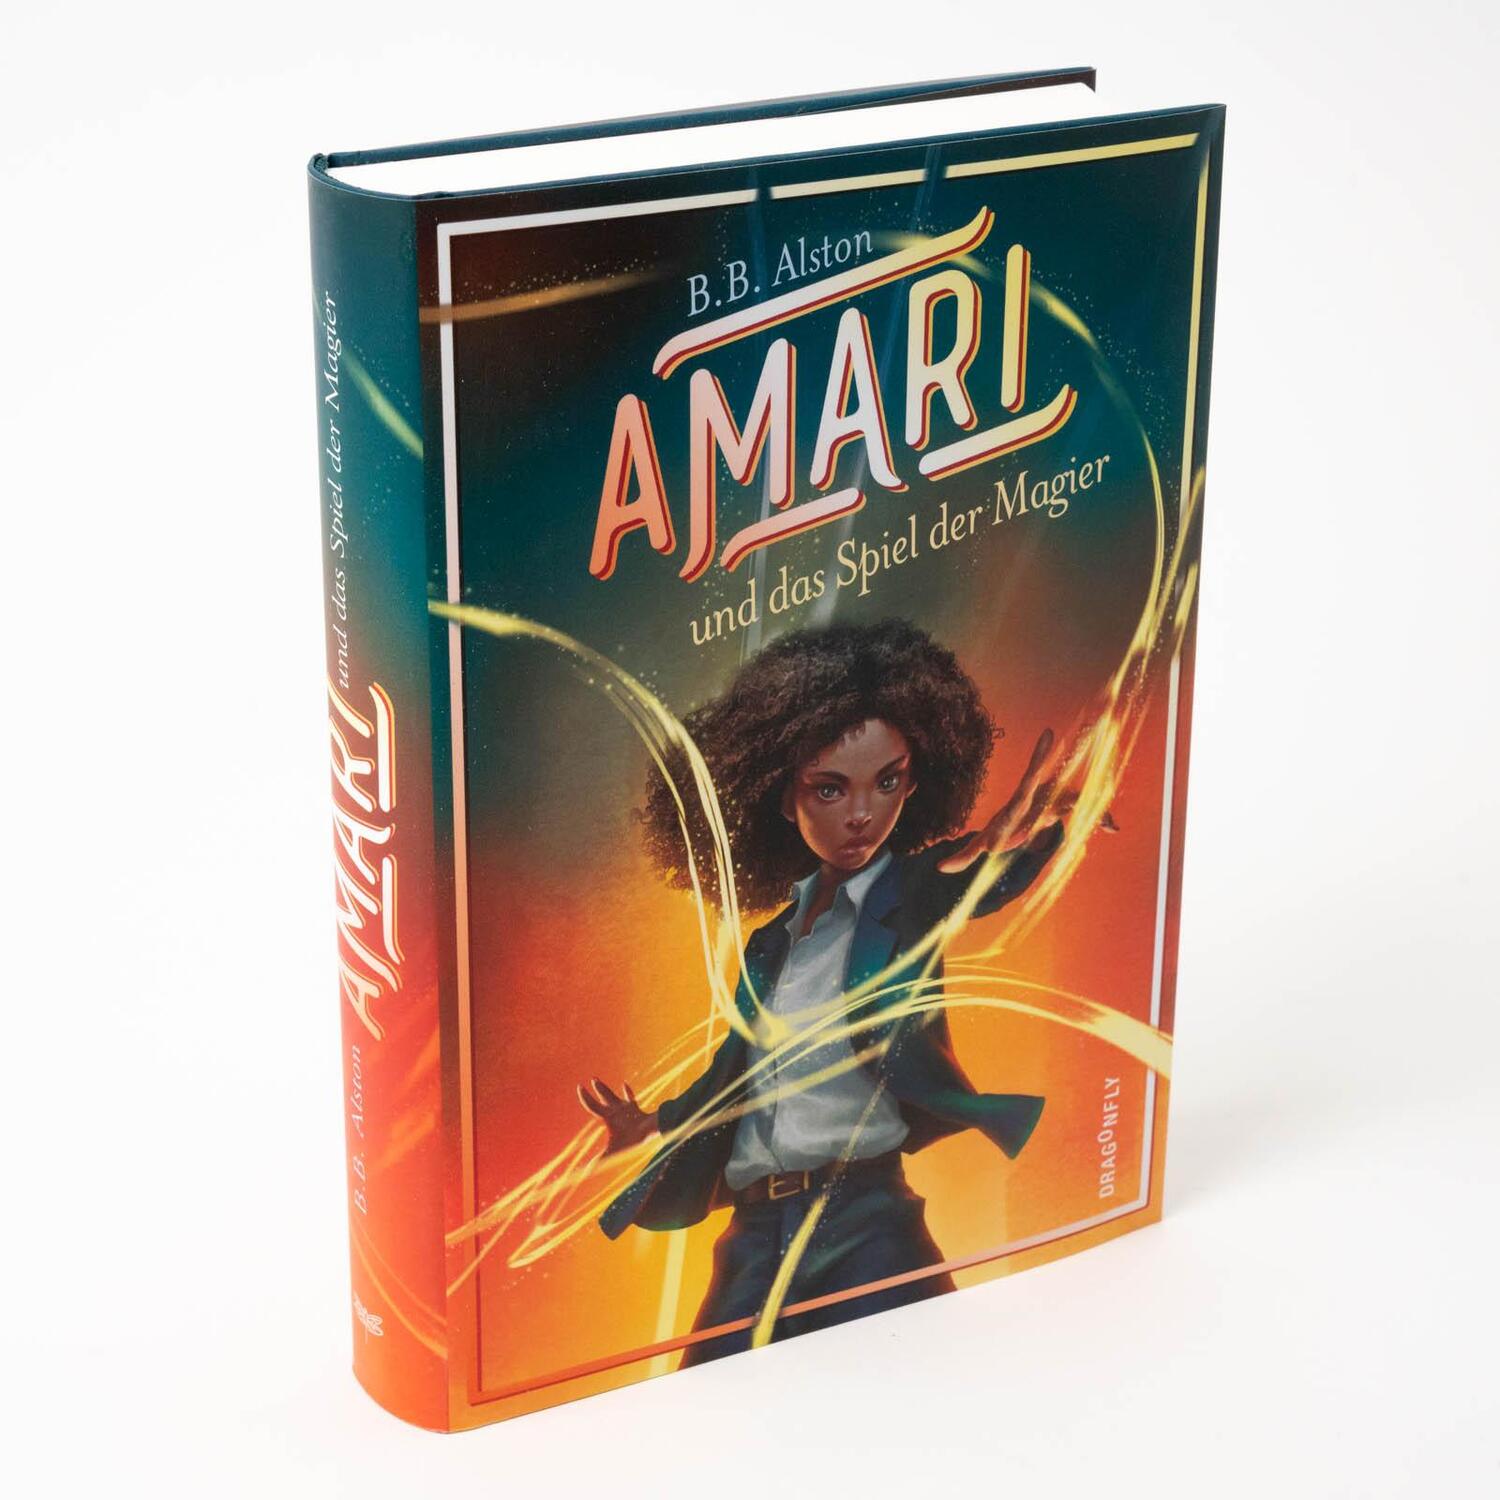 Bild: 9783748801801 | Amari und das Spiel der Magier | B. B. Alston | Buch | Amari | 400 S.